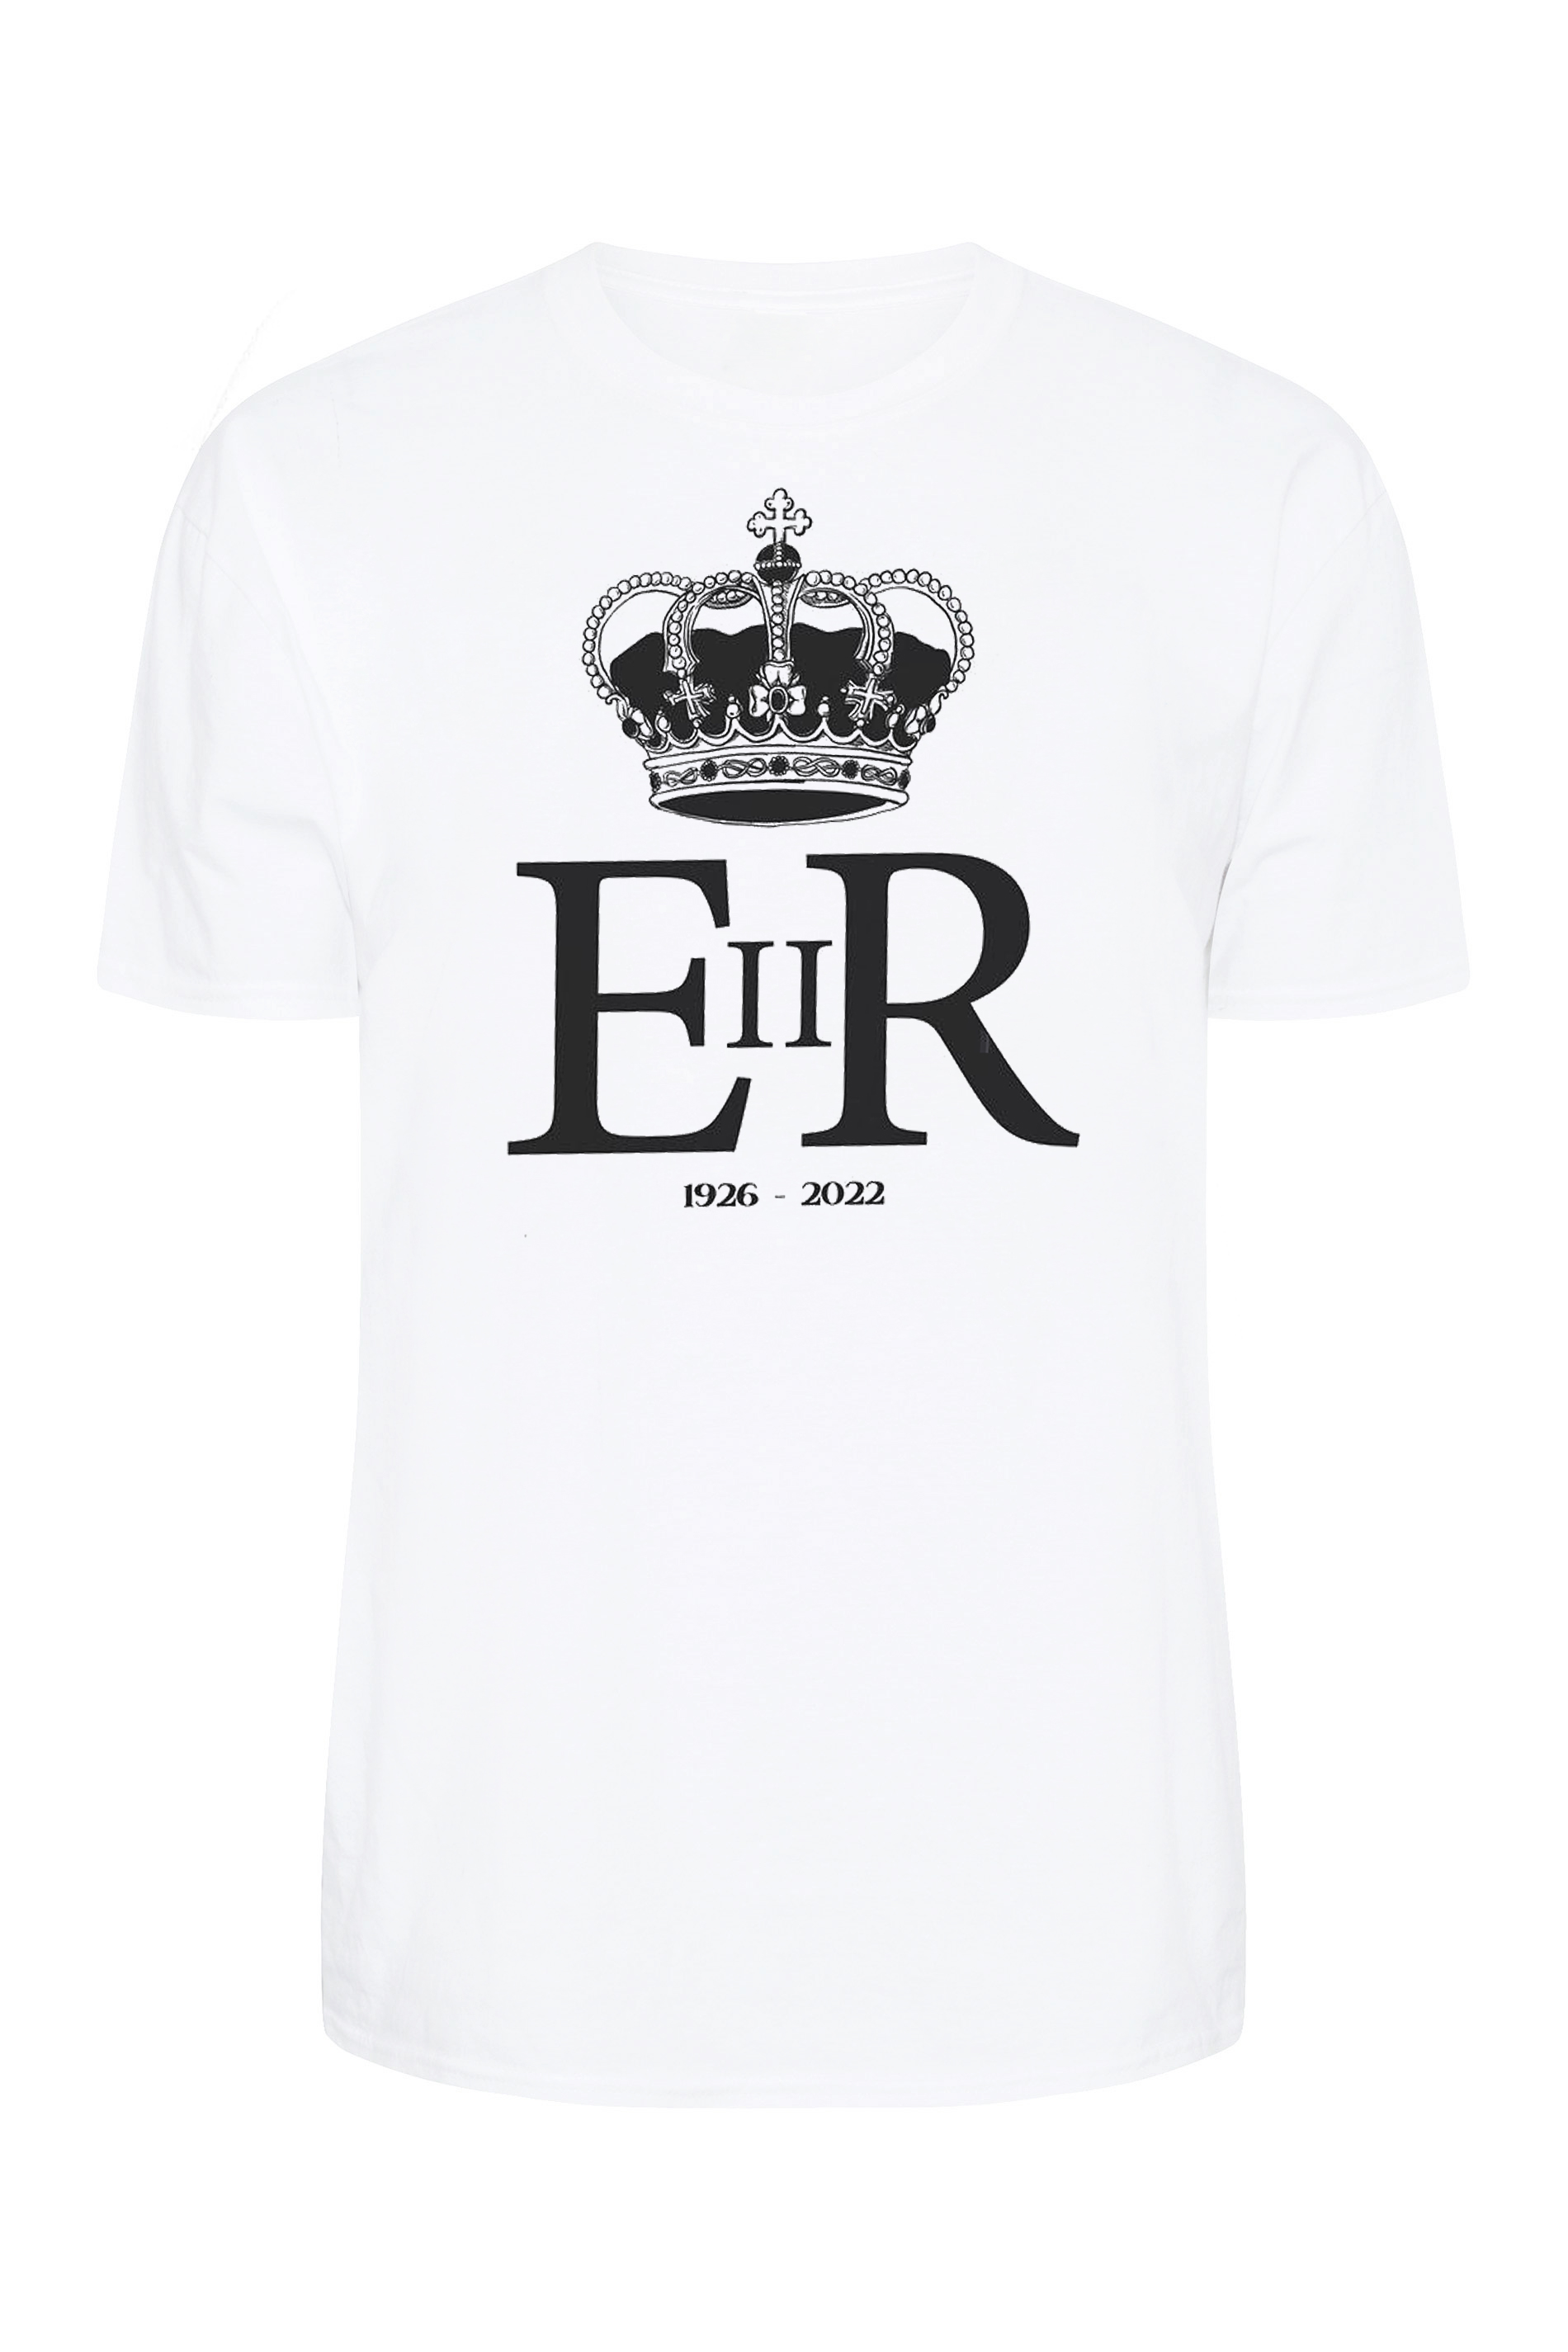 Queen Elizabeth Ii Regina T Shirt Yours Clothing 